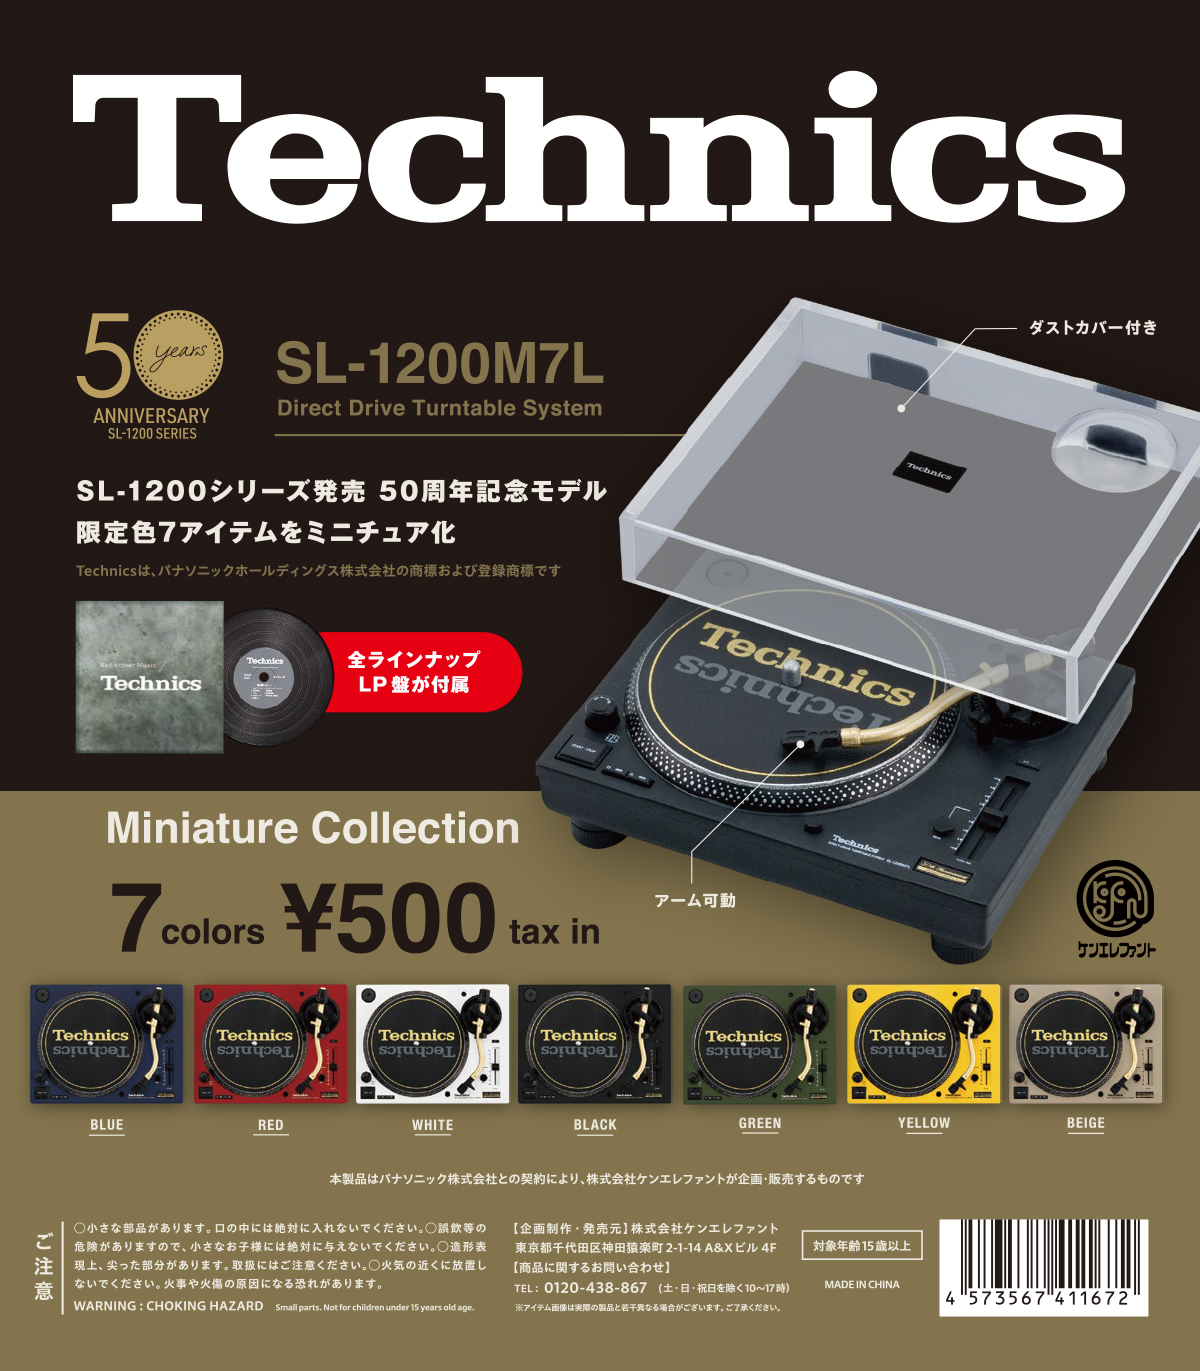 Technics」の名作ターンテーブル「SL-1200」の発売50周年記念モデル